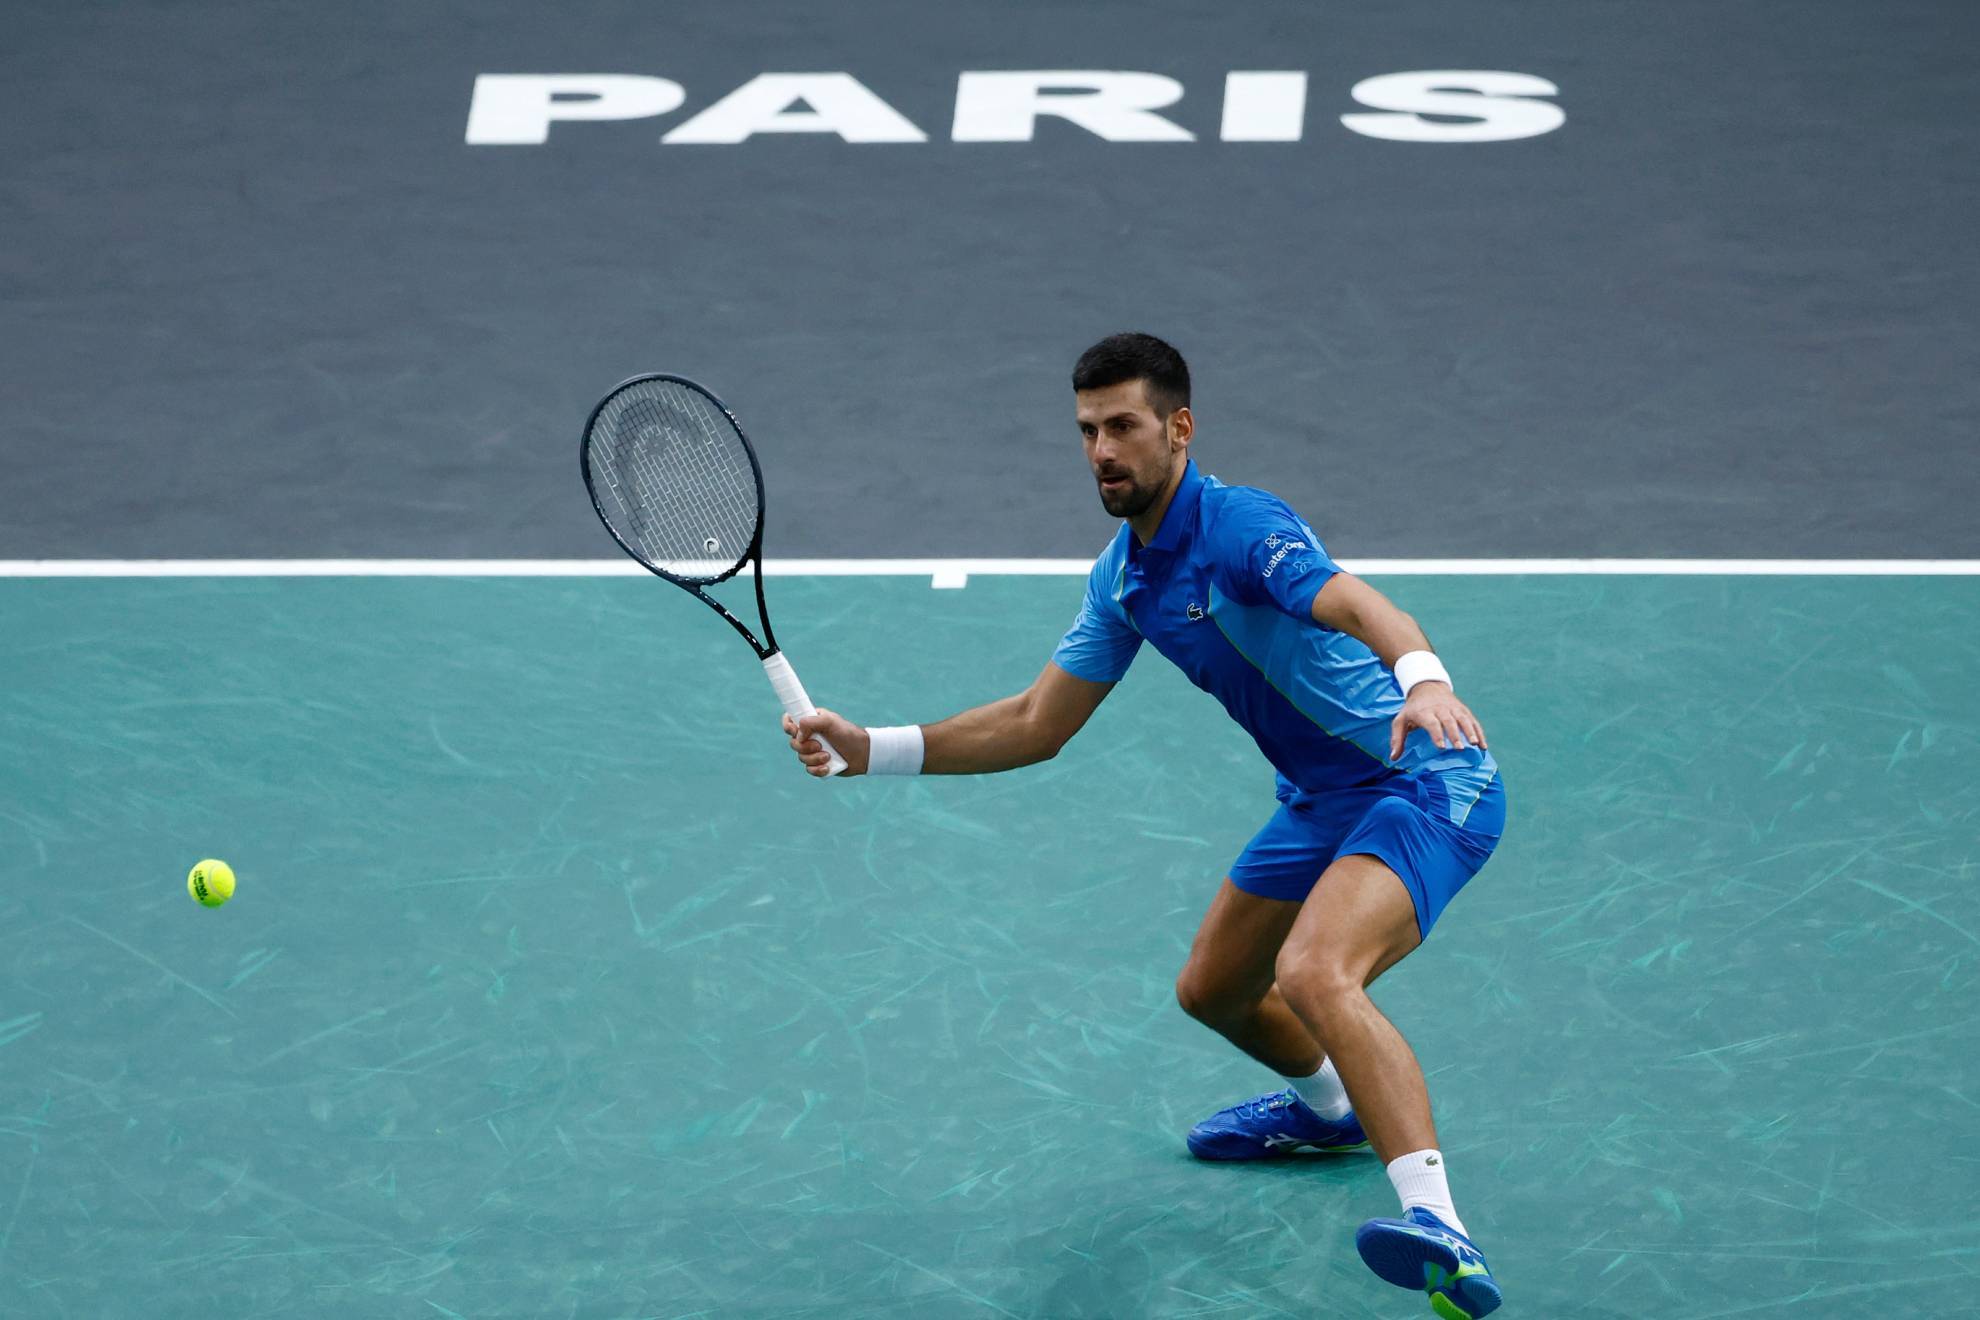 Djokovic - Dimitrov, hoy en directo | Final Masters 1000 Pars - Bercy